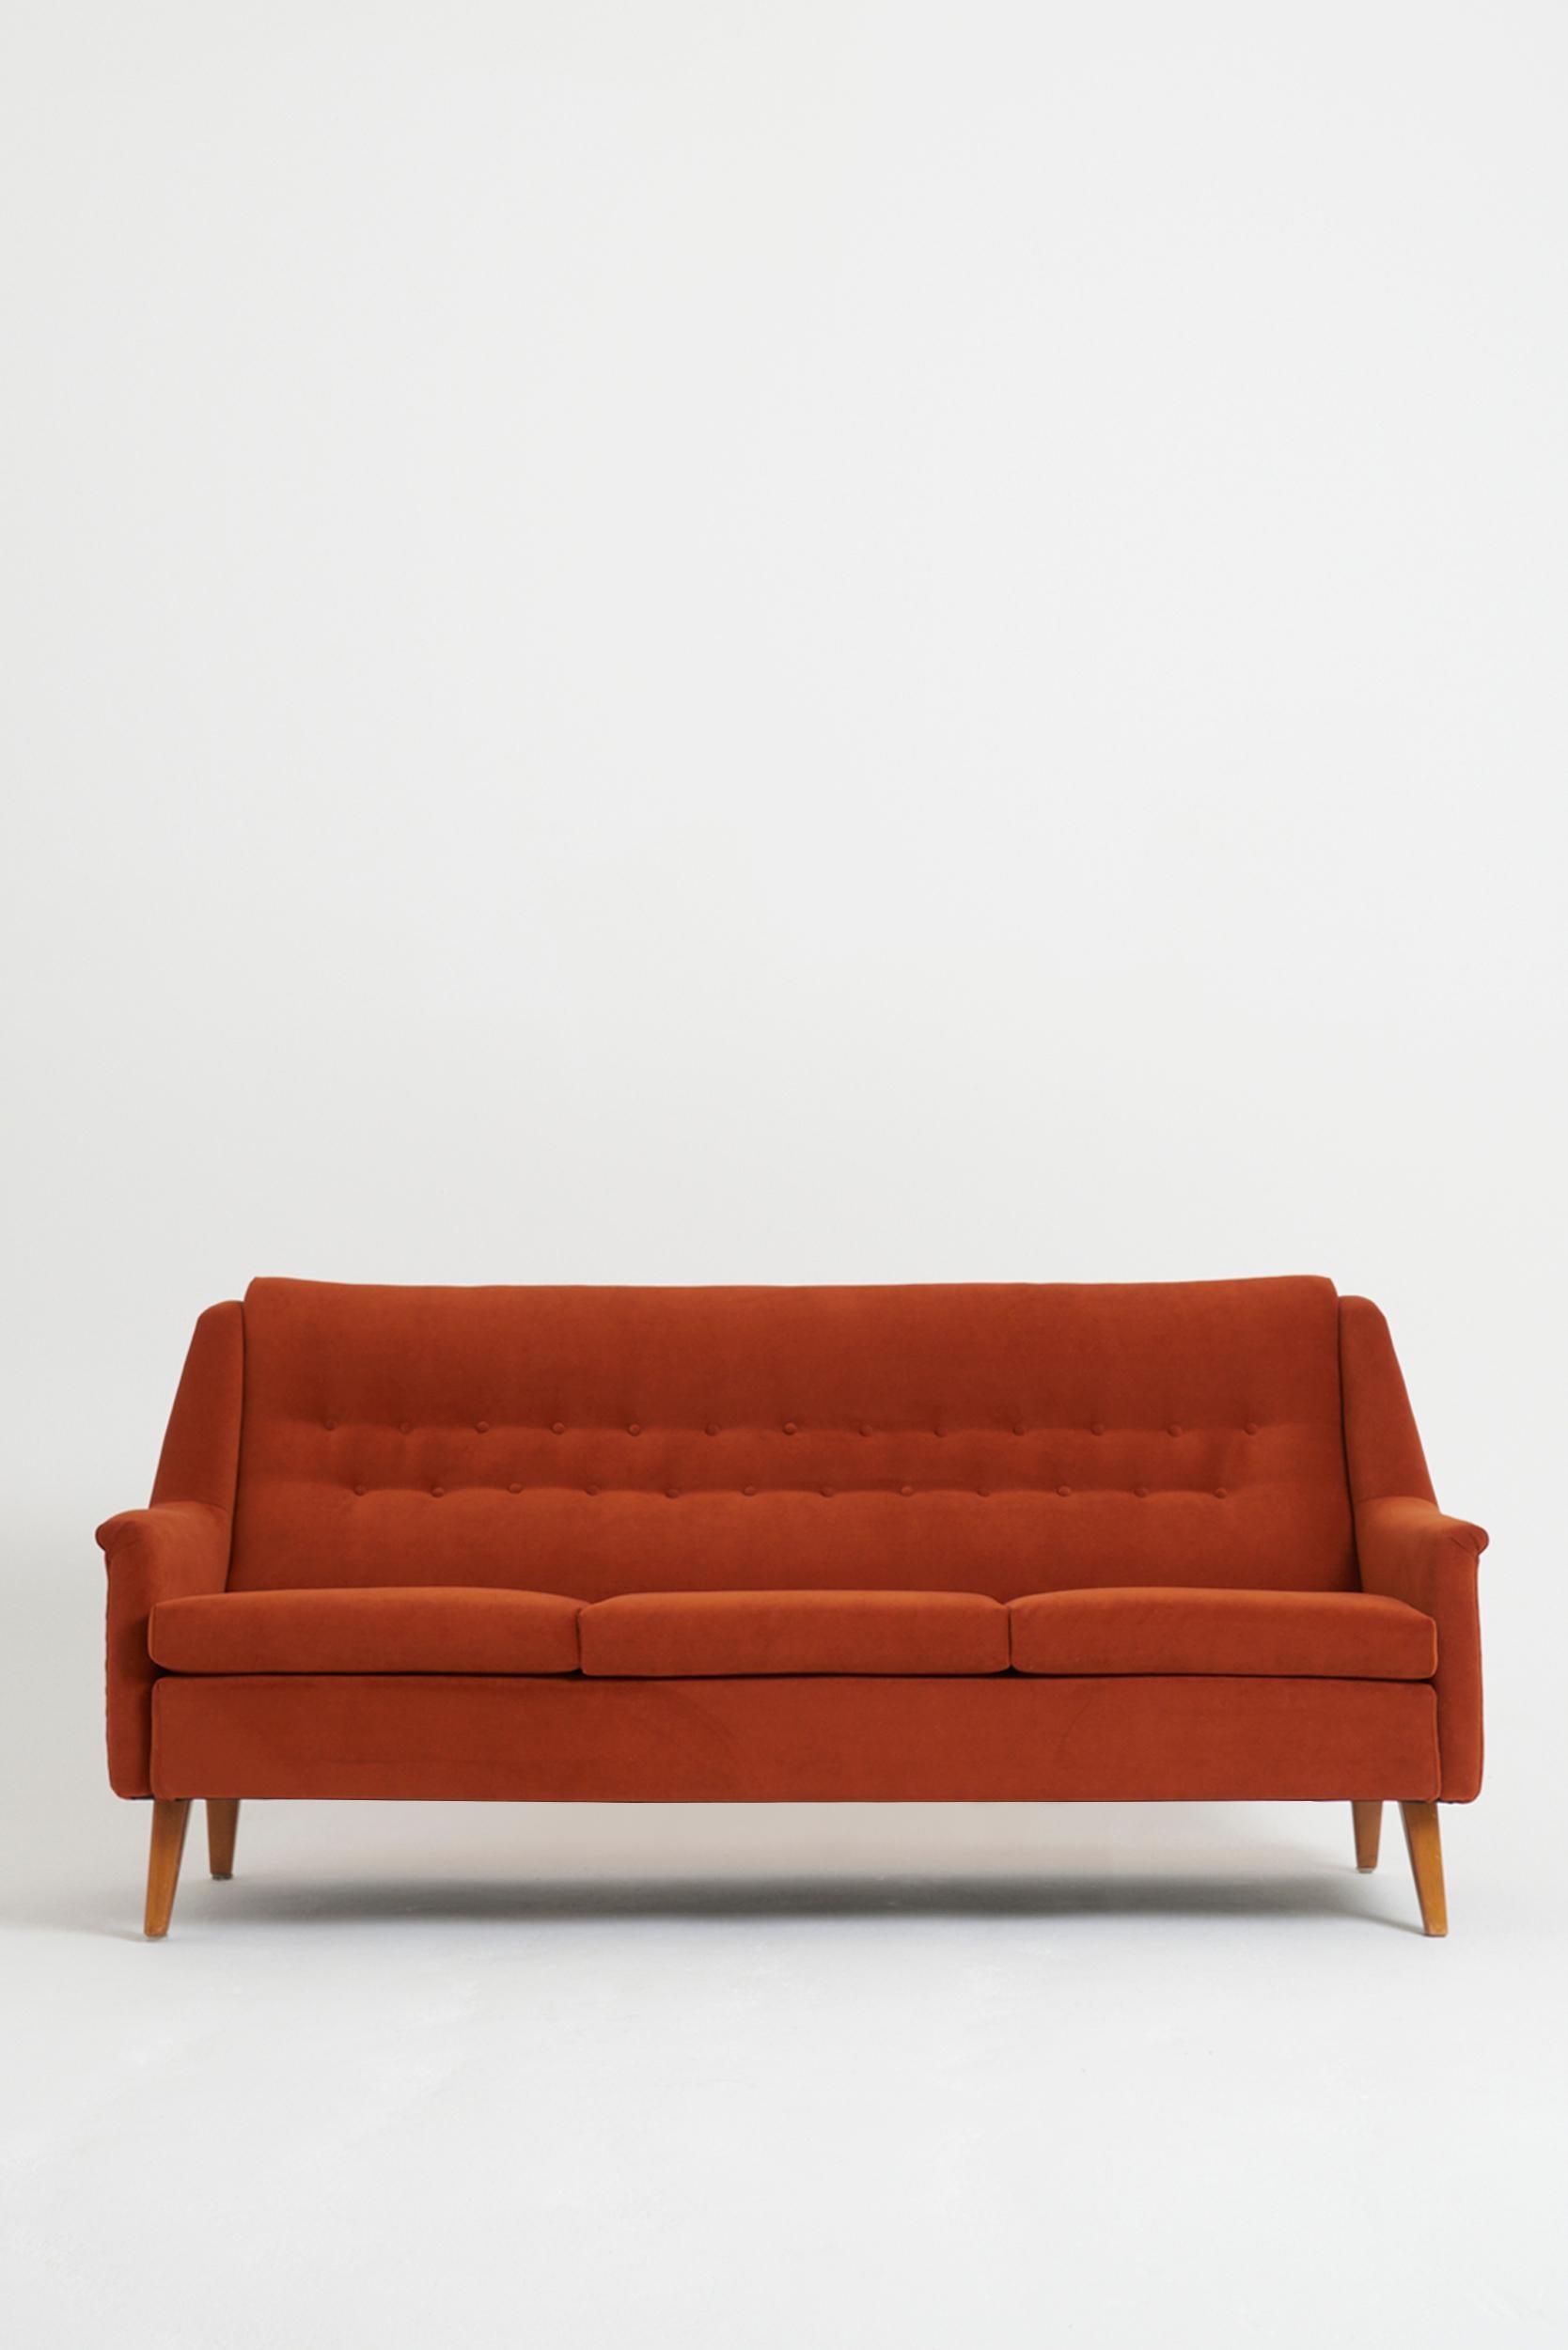 Ein geknöpftes Sofa, gepolstert mit orangefarbenem Samt
Schweden, ca. 1940-50
86 cm hoch x 179 cm breit x 84 cm tief, Sitzhöhe 43 cm